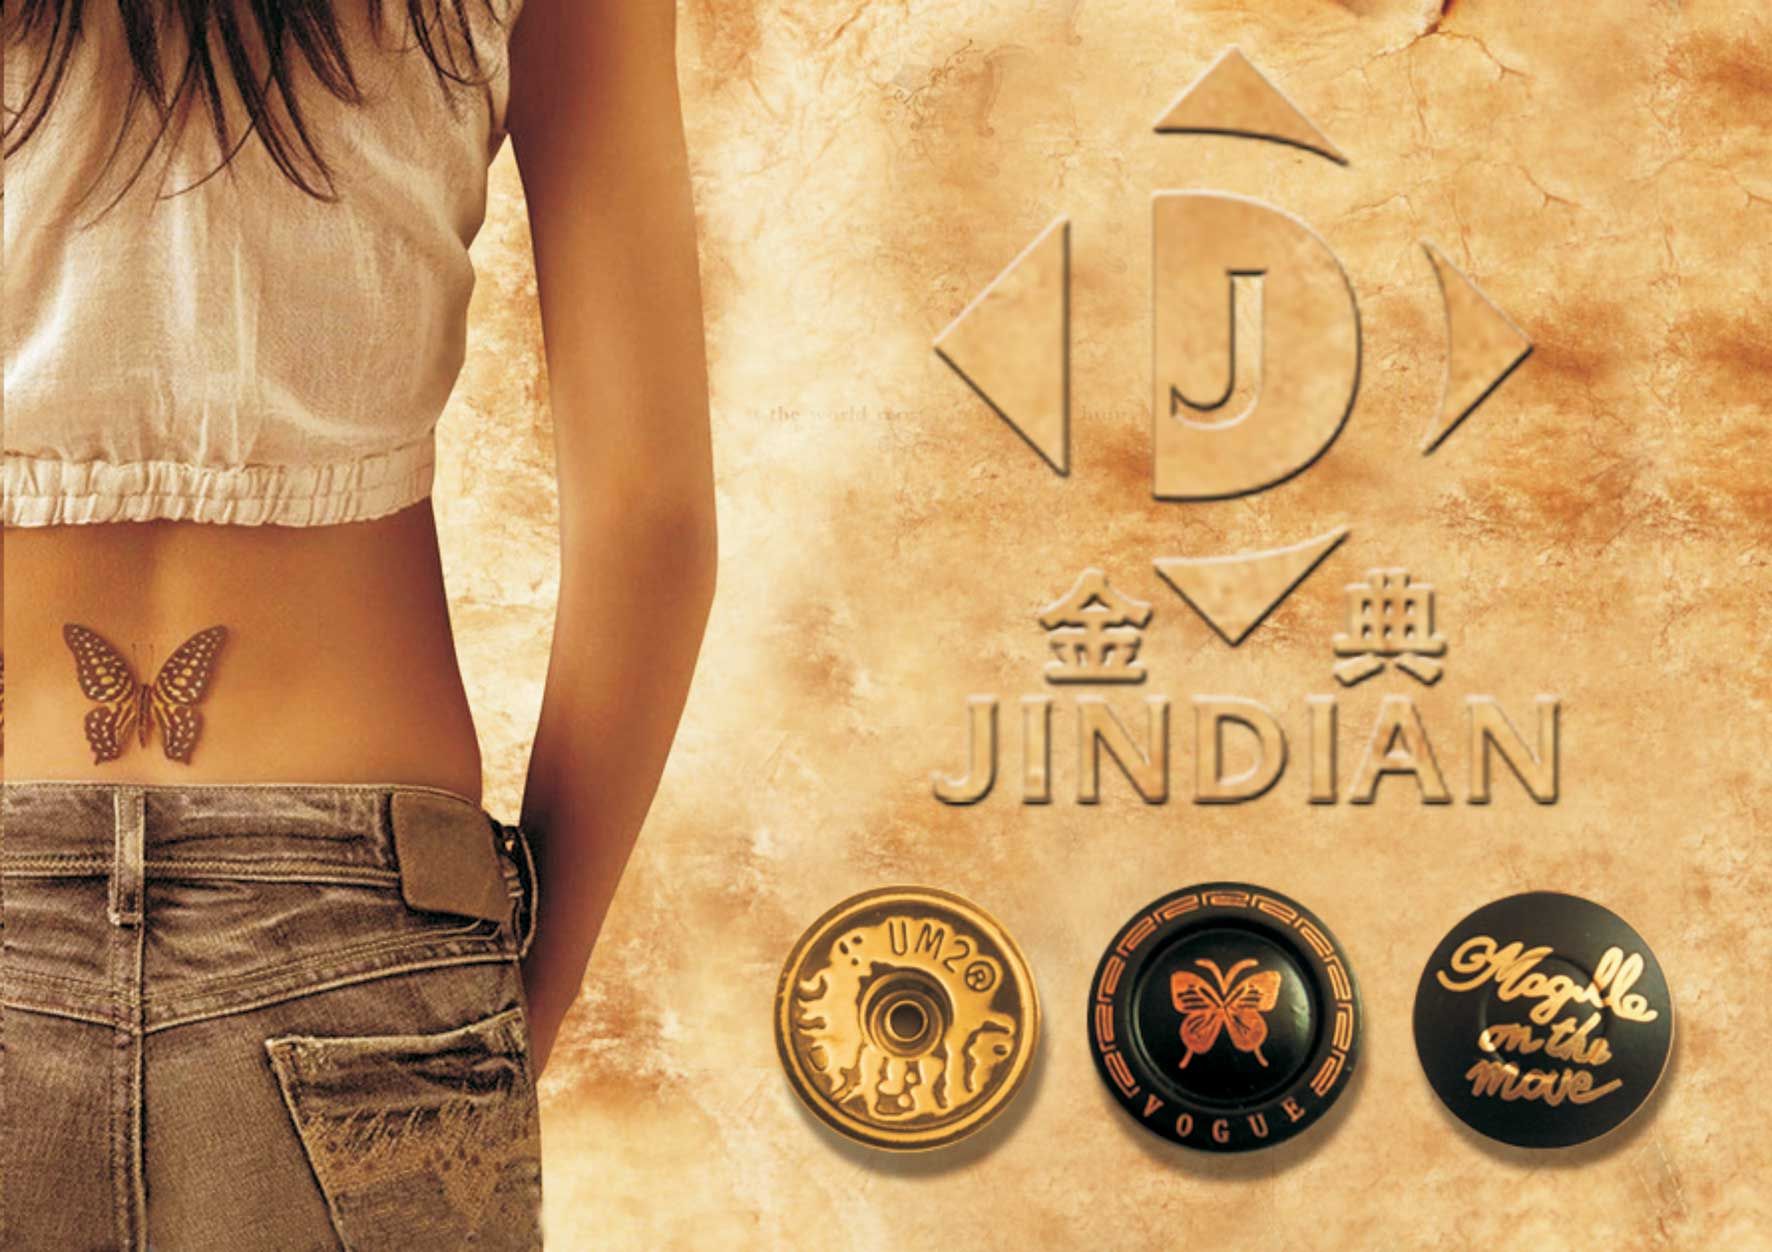 Jindian Hardware Plastic Factory logo